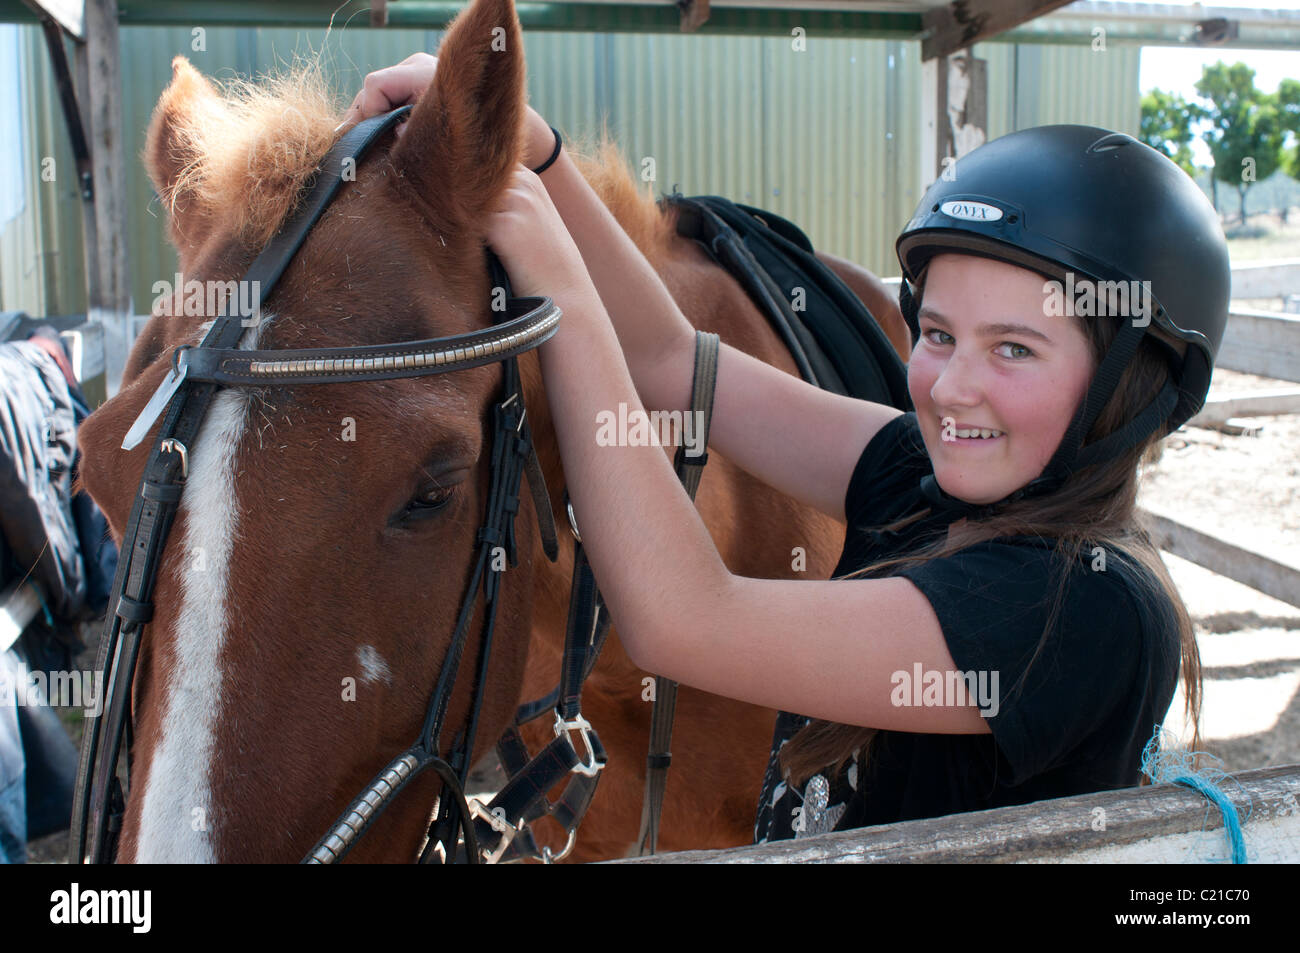 Ein junger Student Reiter stellt einen Zaum auf einem Pferd in einer Reitschule Stockfoto